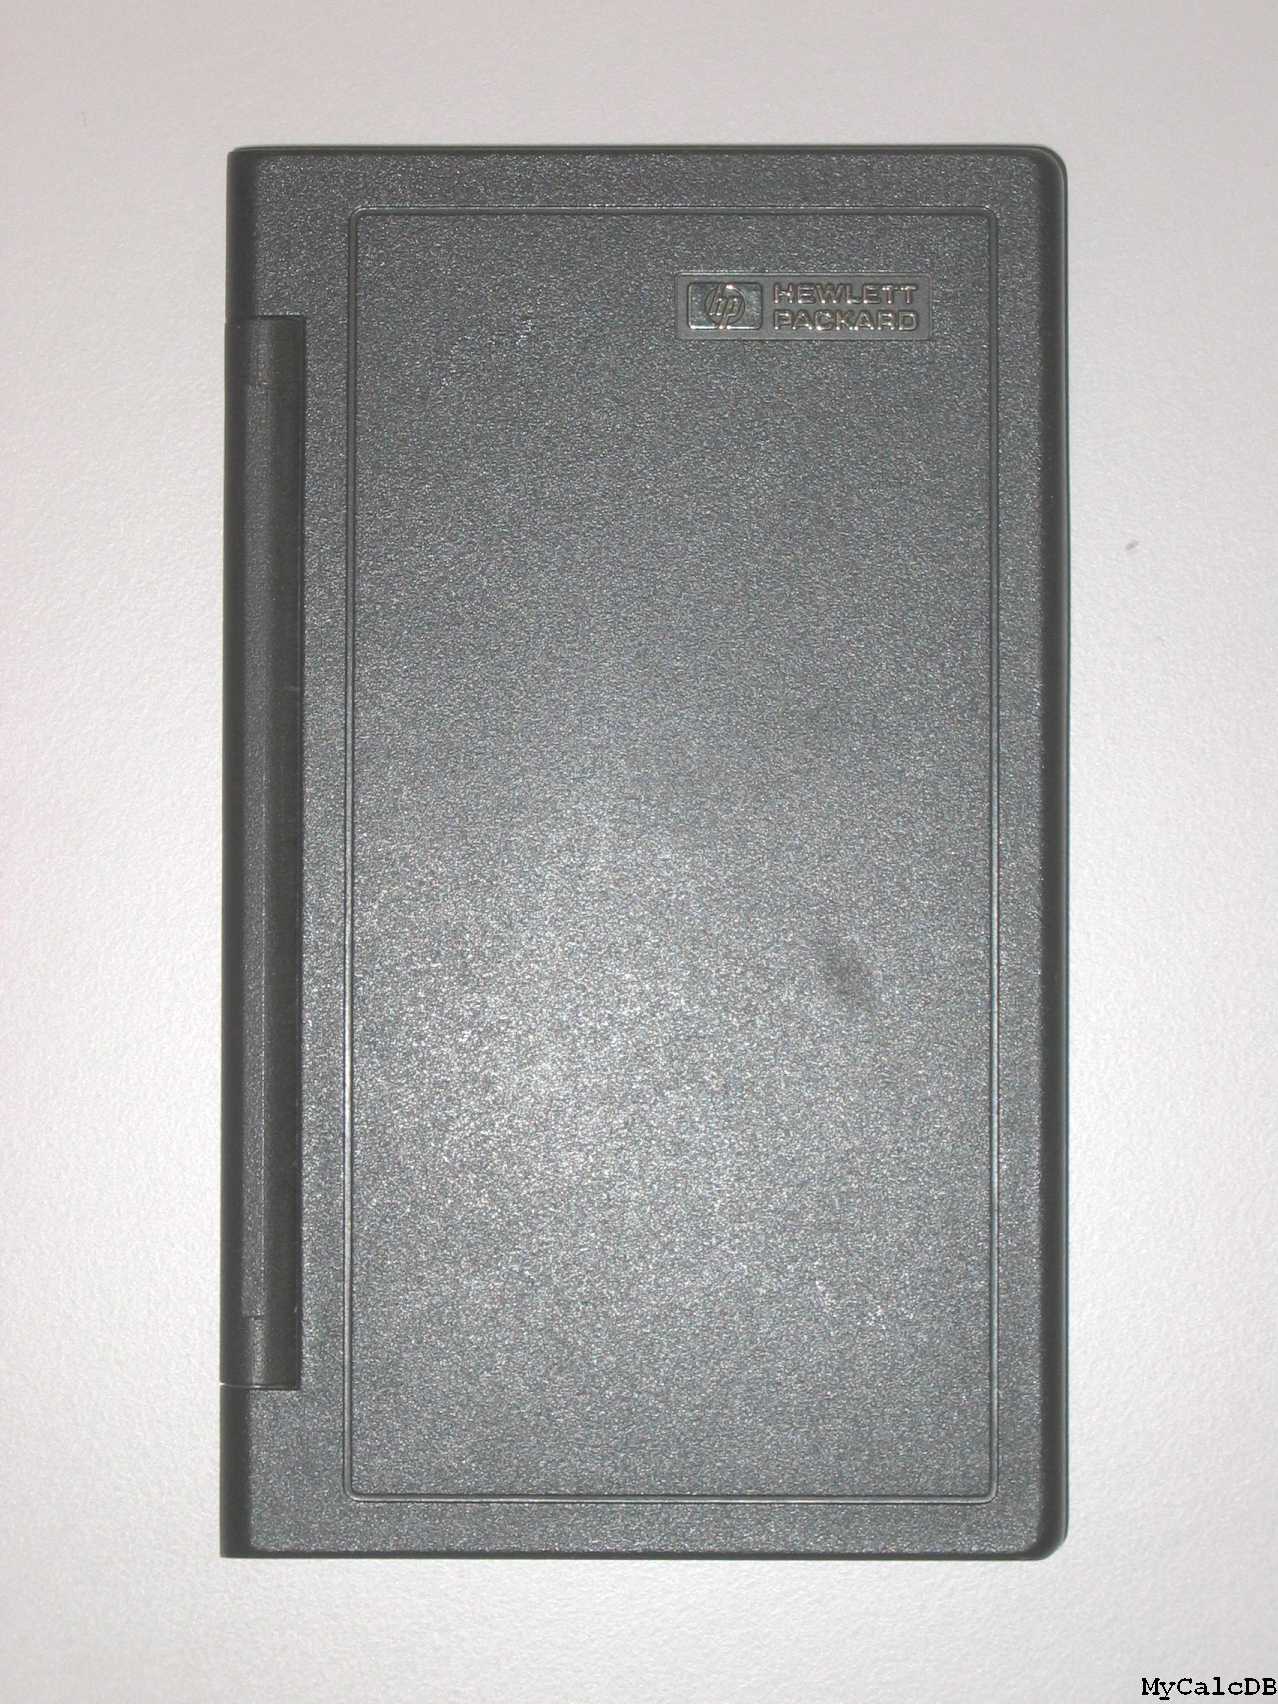 Hewlett-Packard 18C